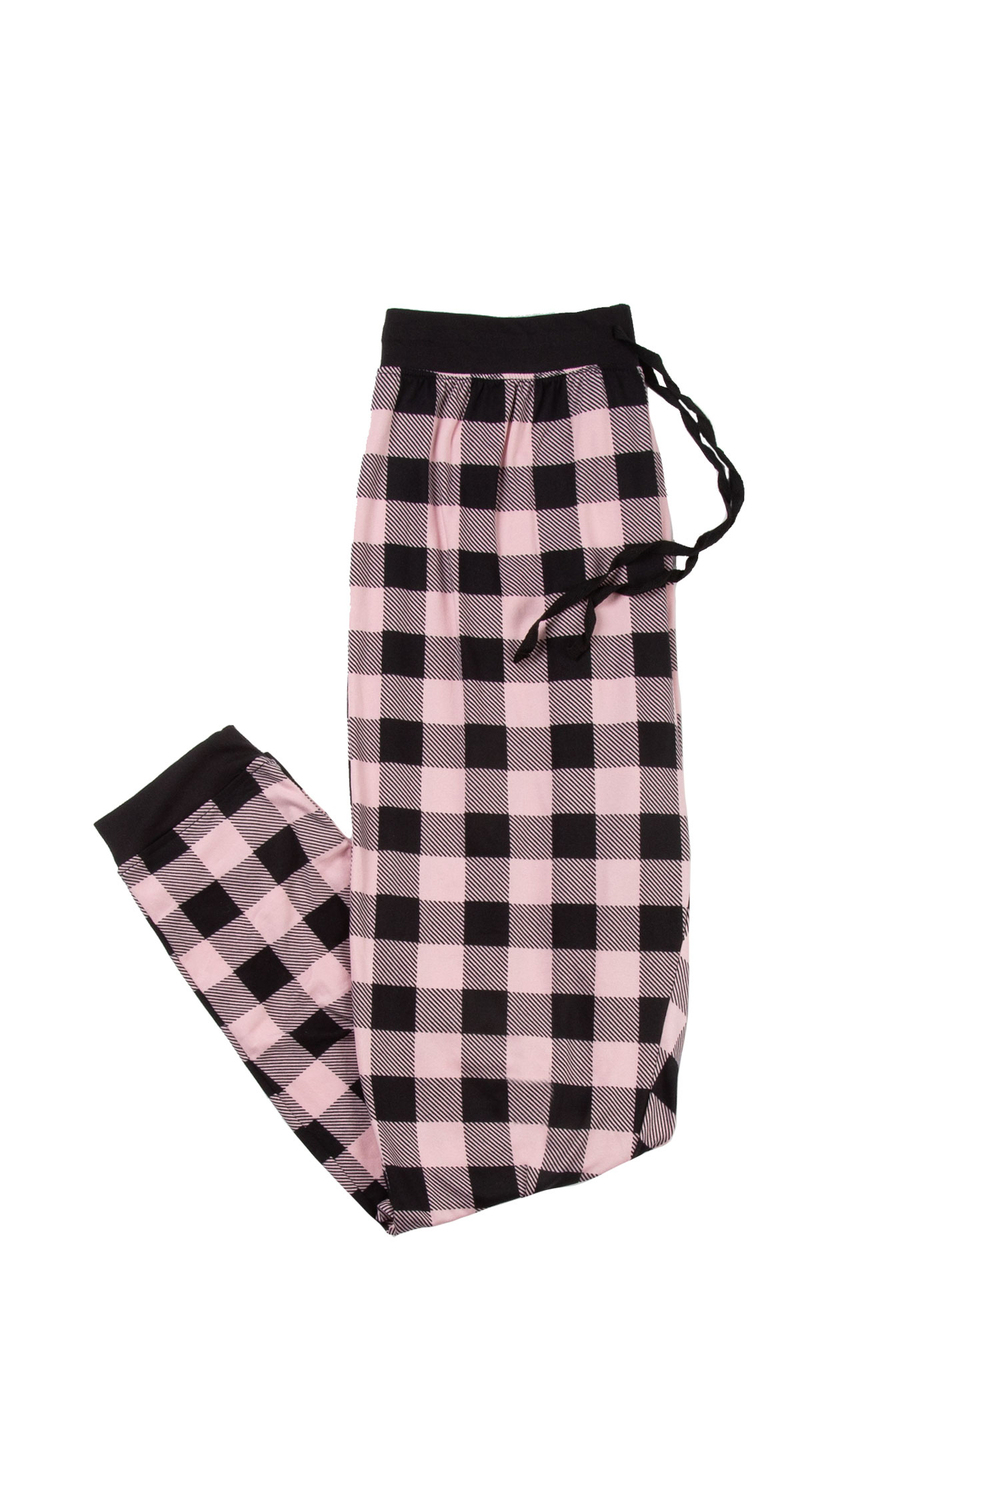 Pantalon de pyjama style jogger en tricot extensible, carreaux roses/noirs, grand (G)